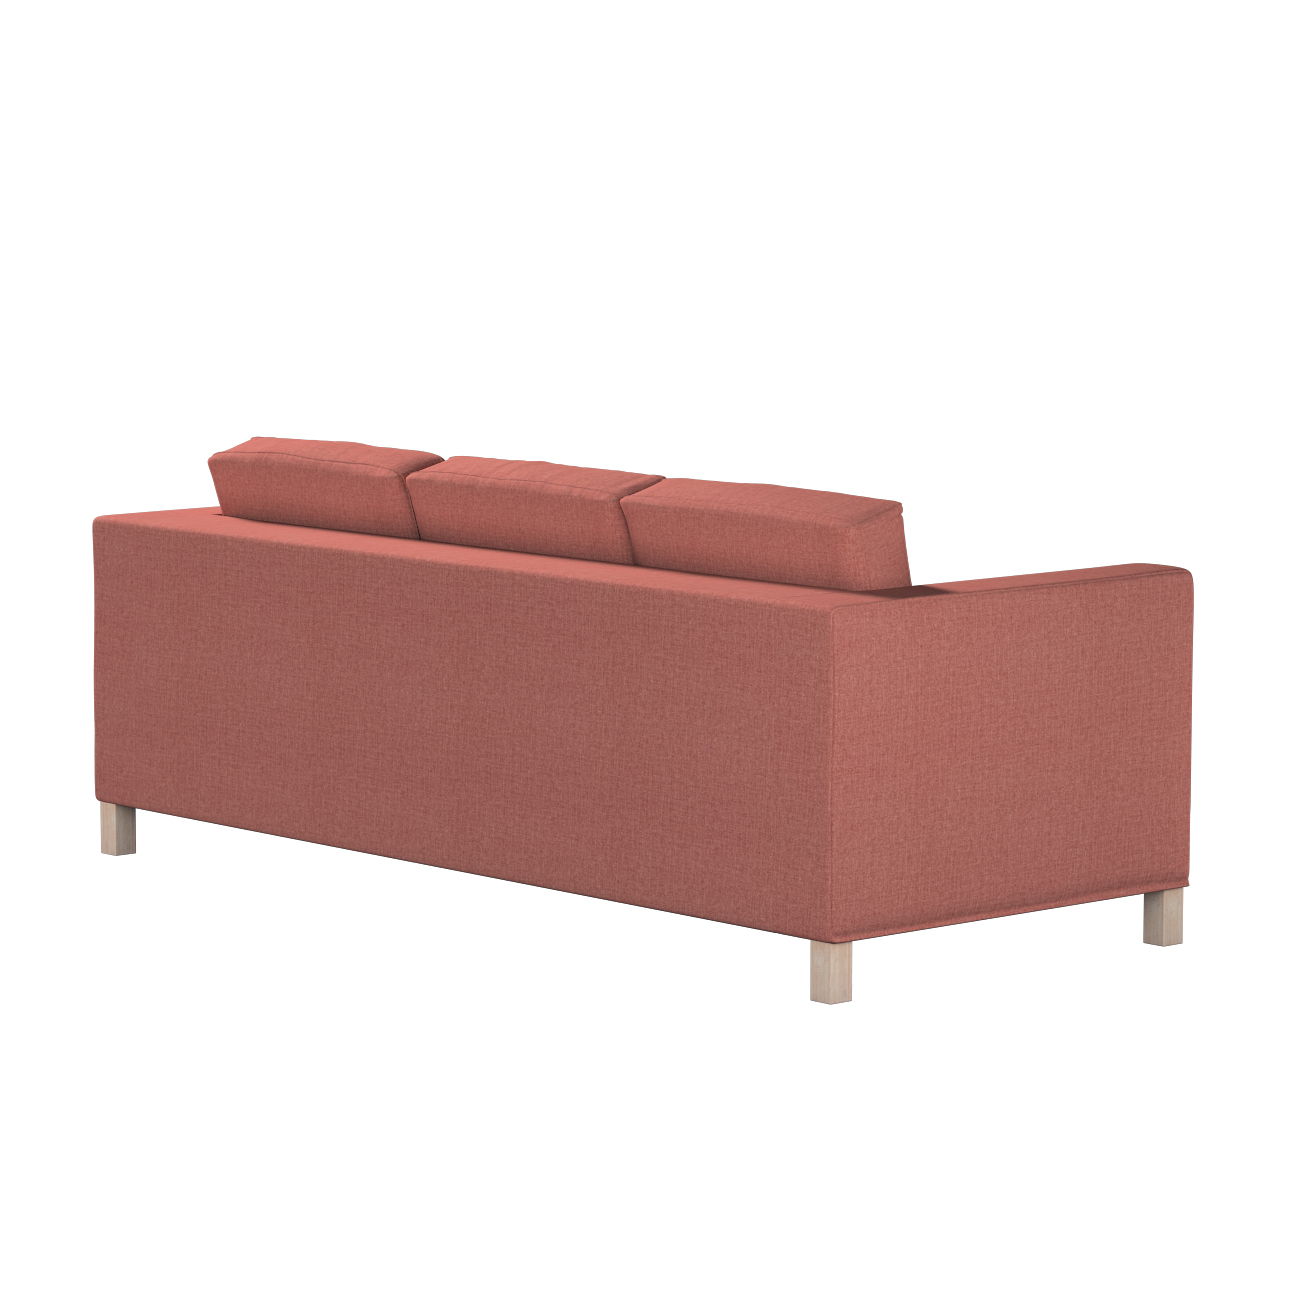 Bezug für Karlanda 3-Sitzer Sofa nicht ausklappbar, kurz, cognac braun, Bez günstig online kaufen